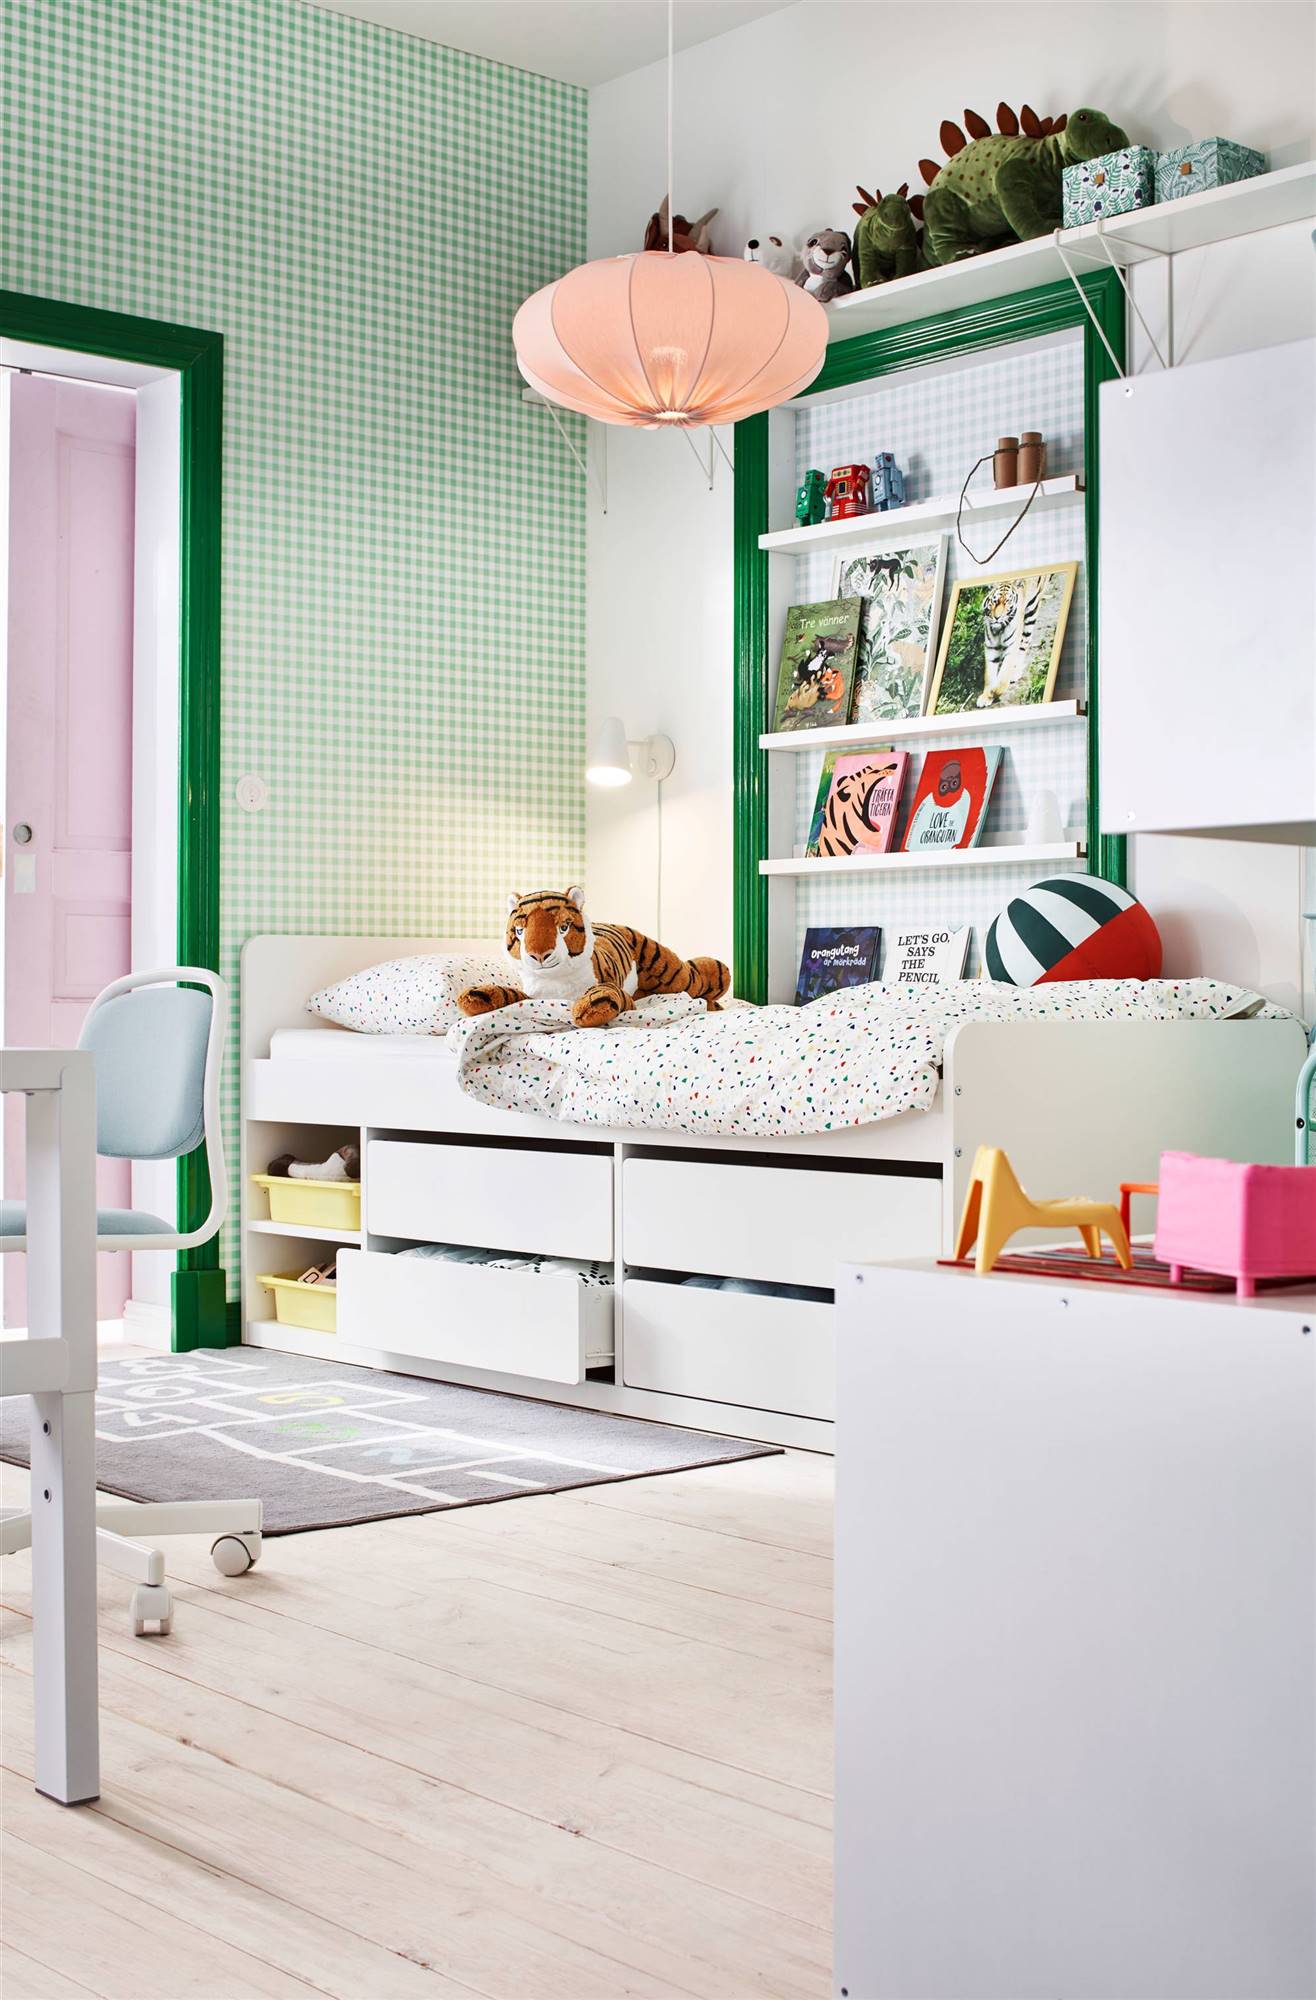 banjo total microondas Dormitorios juveniles de IKEA: las propuestas que más nos gustan